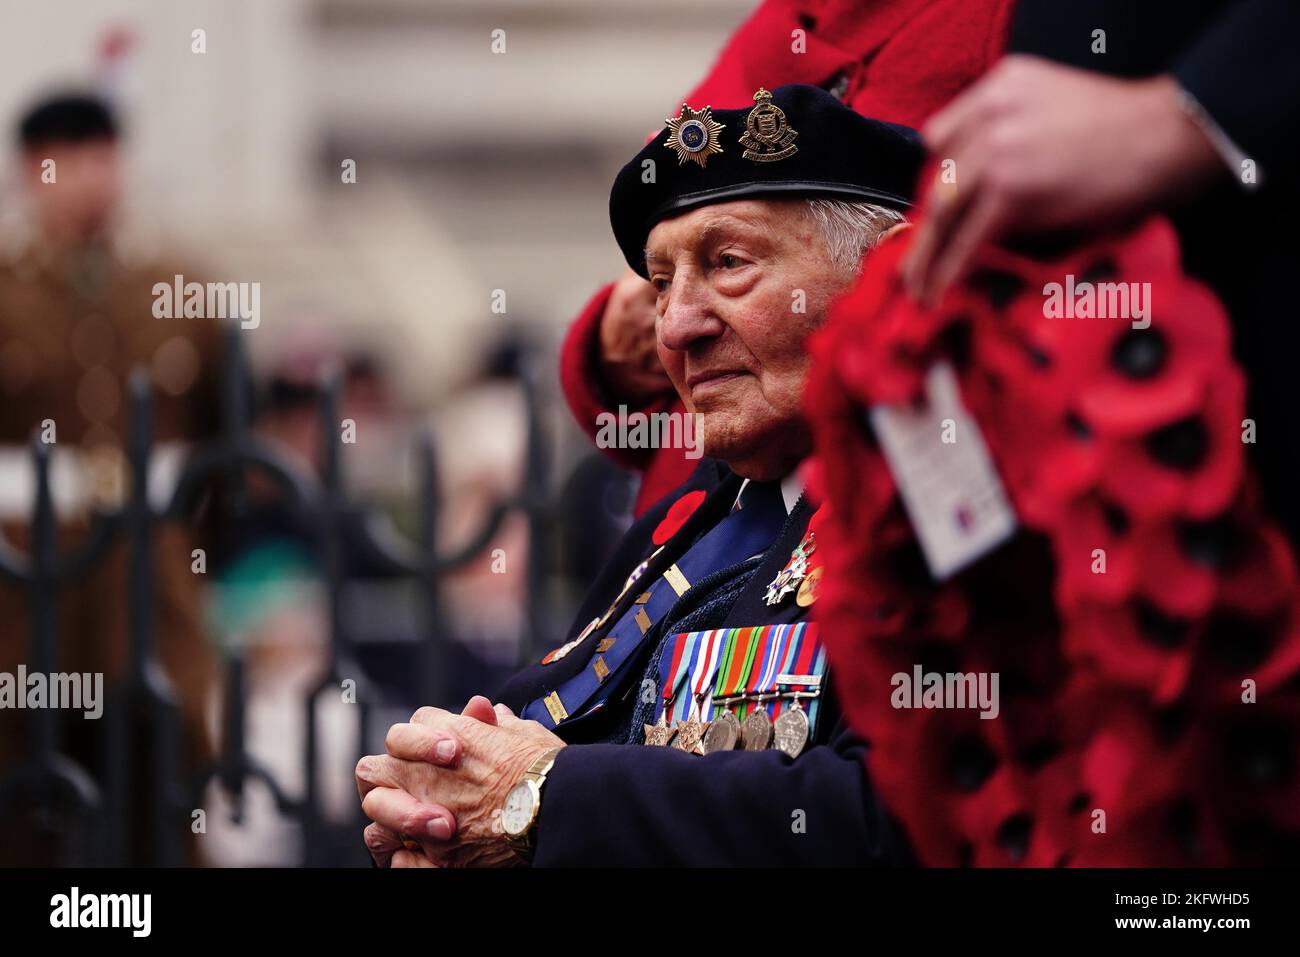 Veteranen während der jährlichen Parade der Vereinigung jüdischer Ex-Soldaten und Frauen im Cenotaph in Whitehall, London. Bilddatum: Sonntag, 20. November 2022. Stockfoto